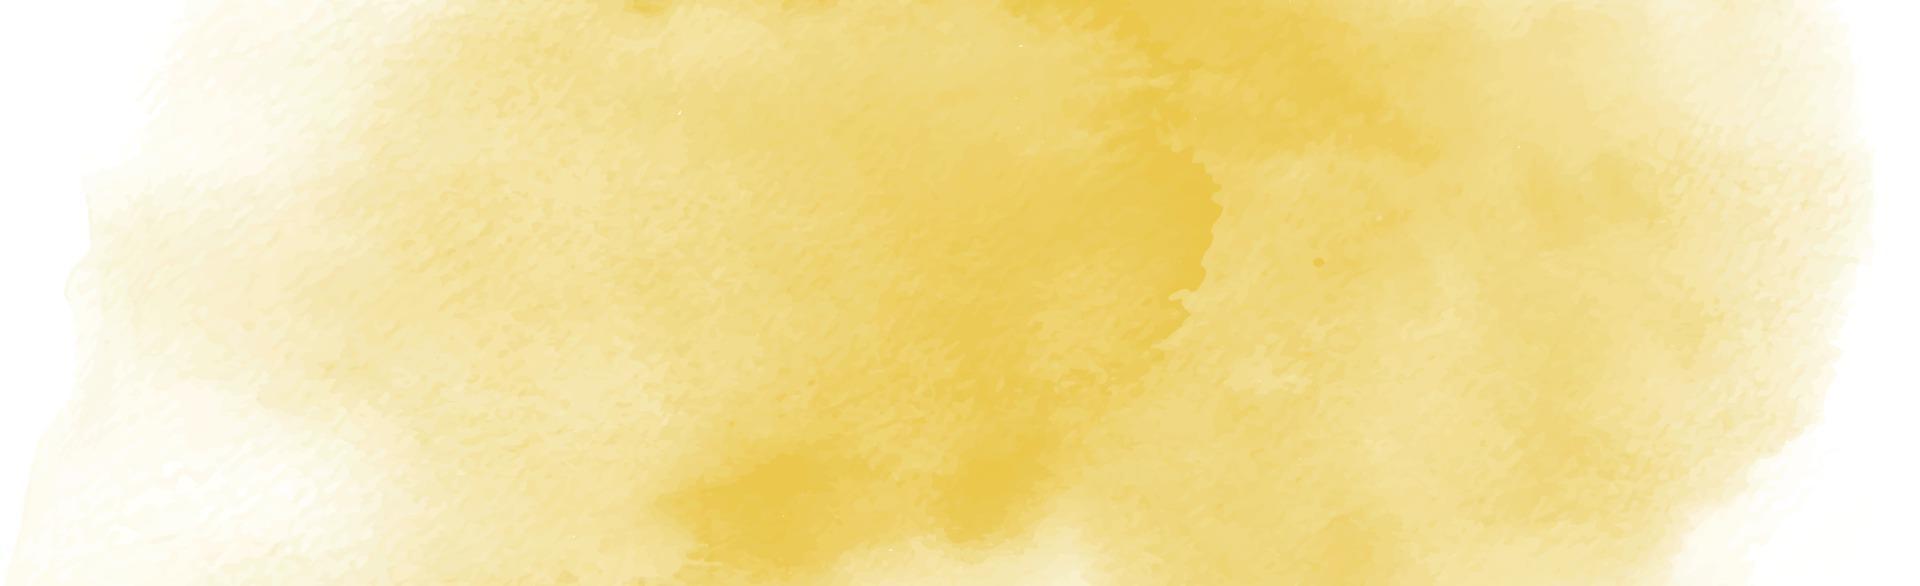 realista textura panorámica de acuarela de color amarillo-naranja sobre un fondo blanco - vector